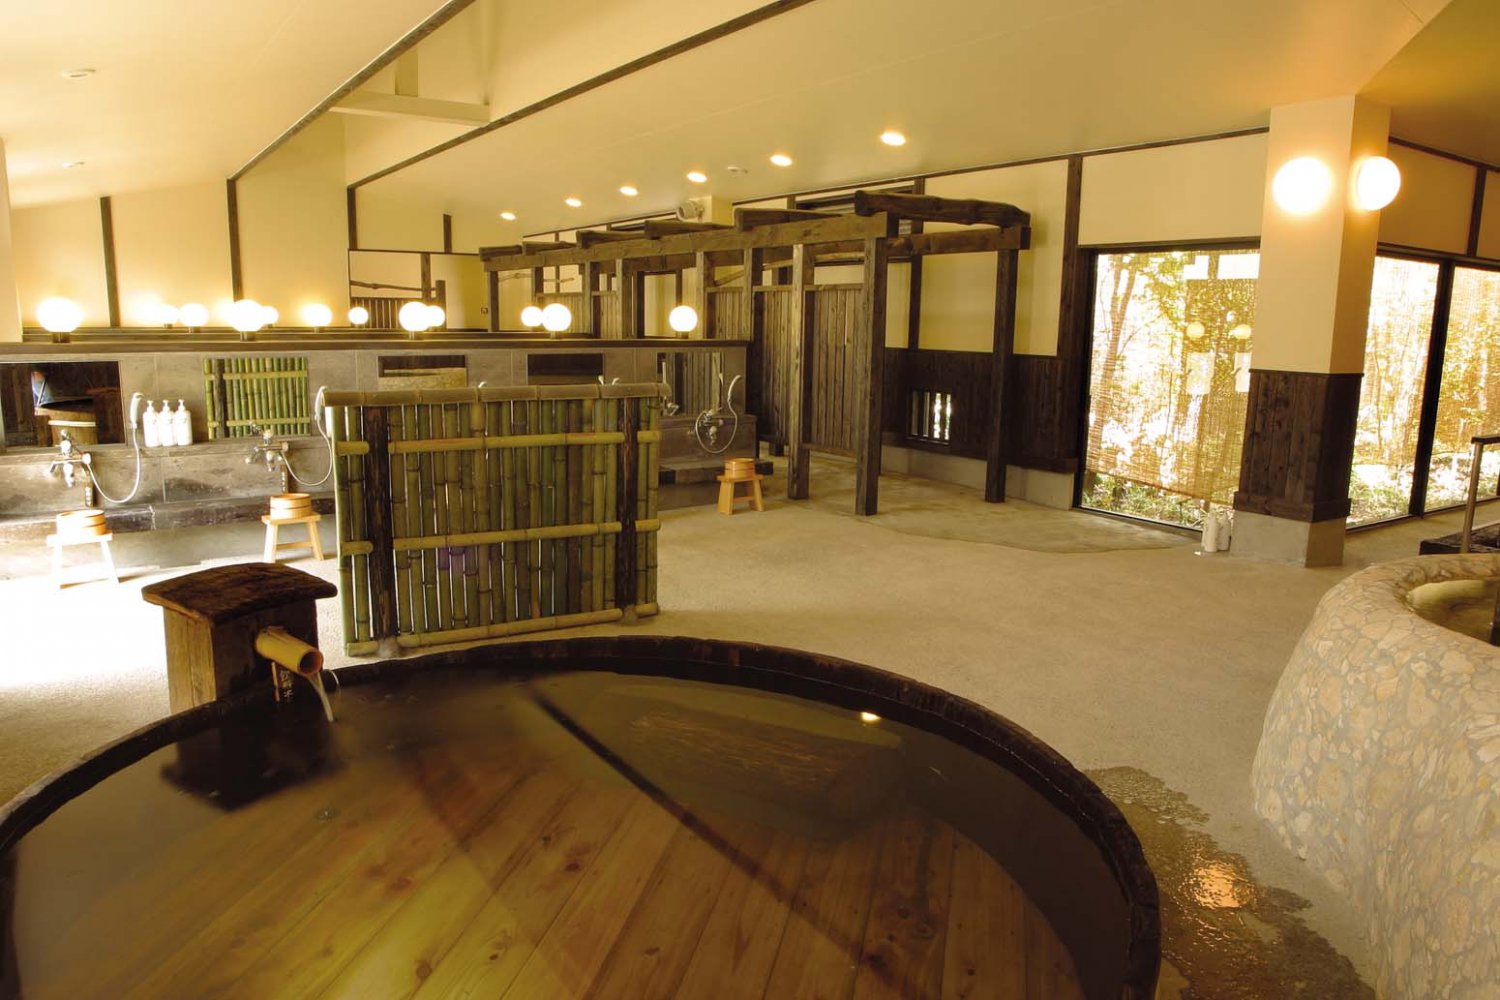 約120年前に作られた『信州タケヤみそ』の味噌樽を使用した味噌樽風呂。